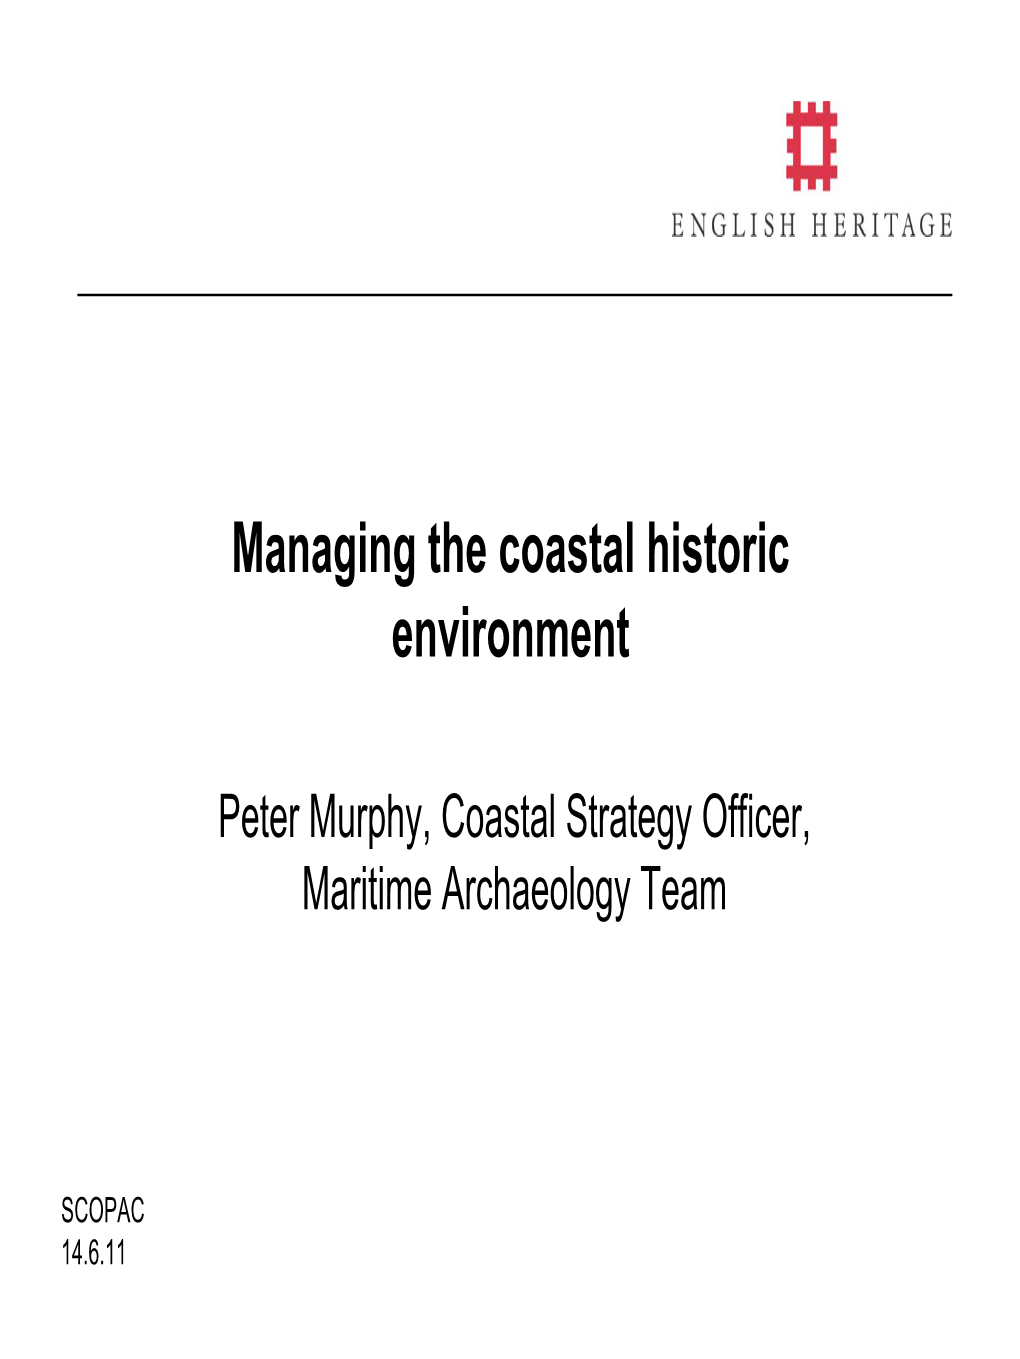 Managing the Coastal Historic Environment